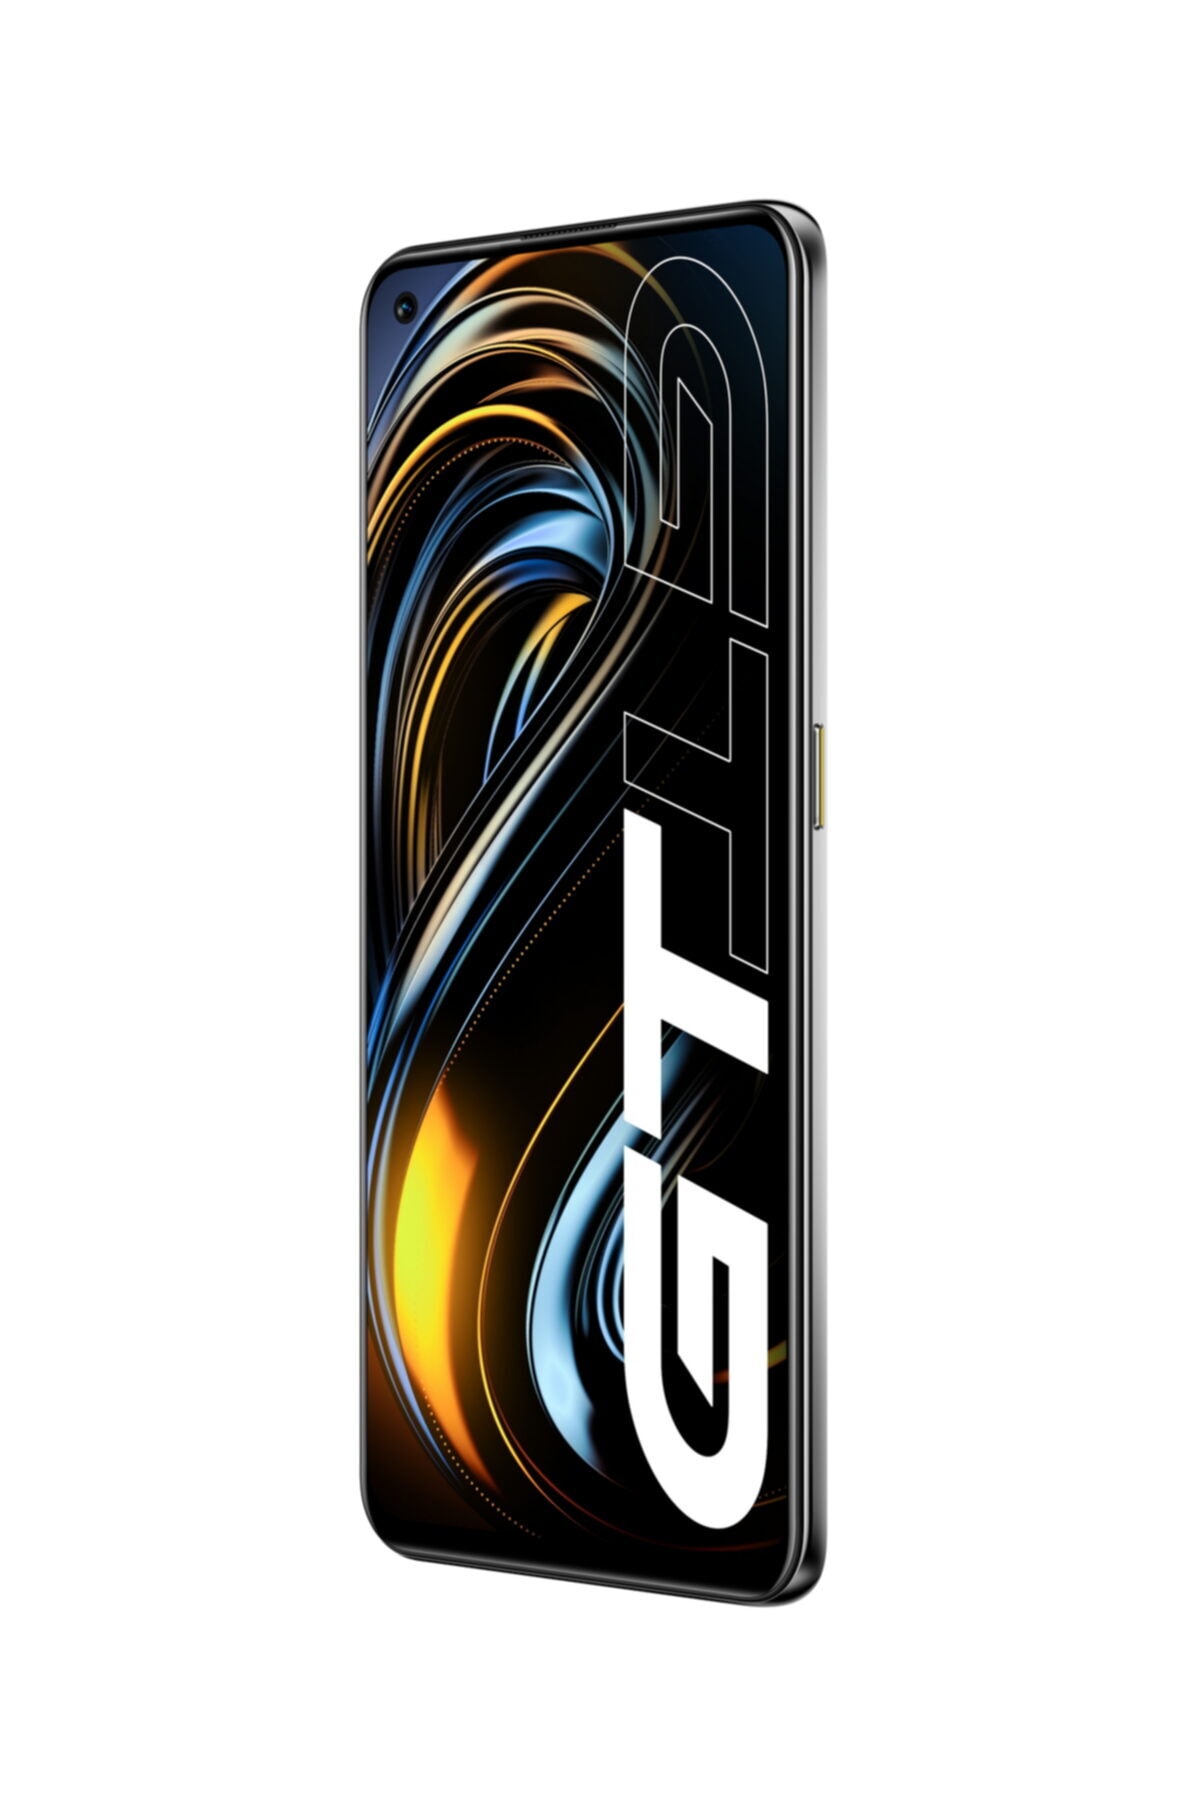 GT 128GB Sarı Cep Telefonu (Realme Türkiye Garantili)